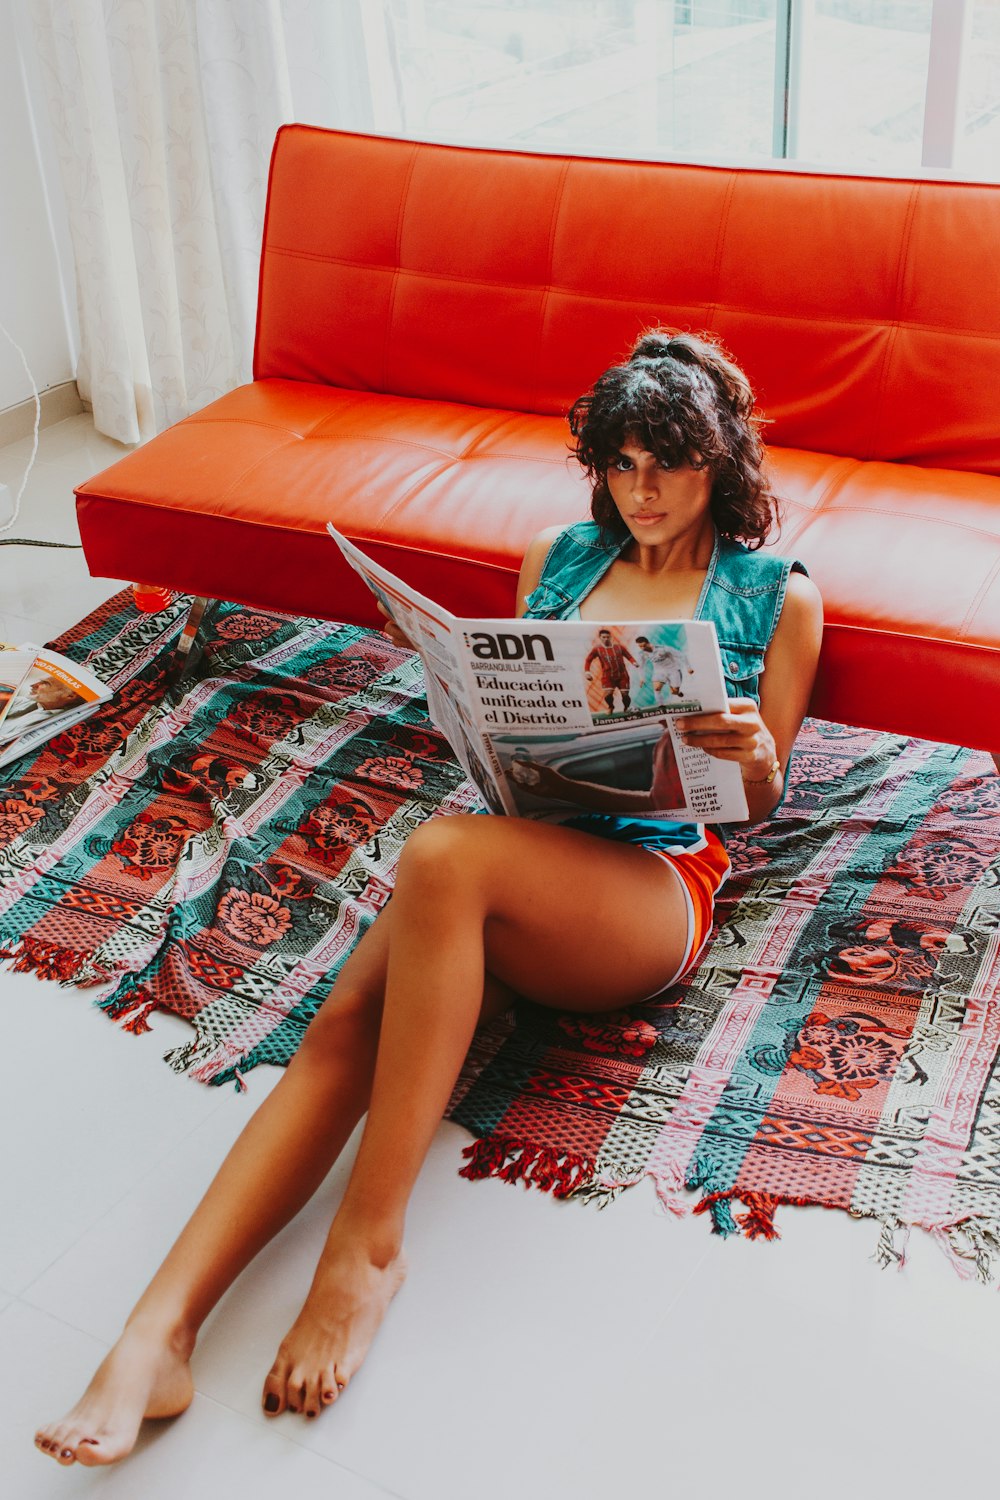 Donna seduta sul pavimento mentre legge il giornale durante il giorno